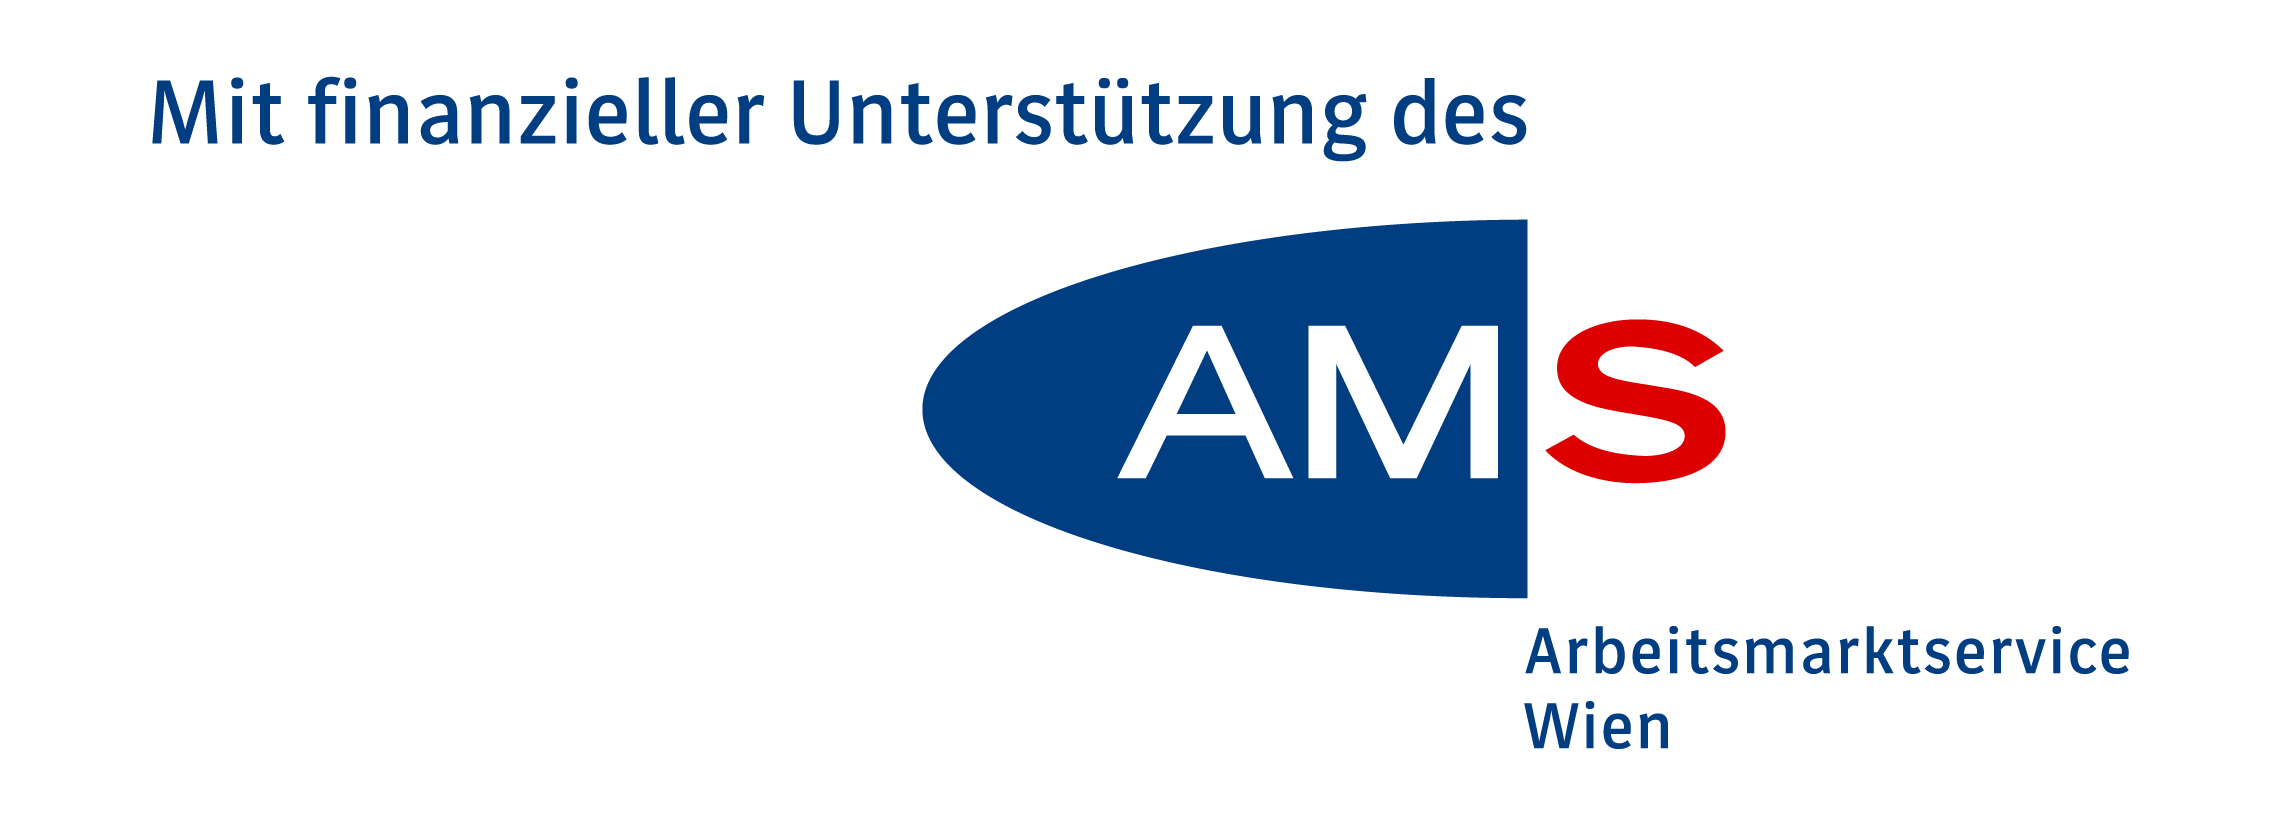 Logo mit finanzieller Unterstützung des AMS Wien